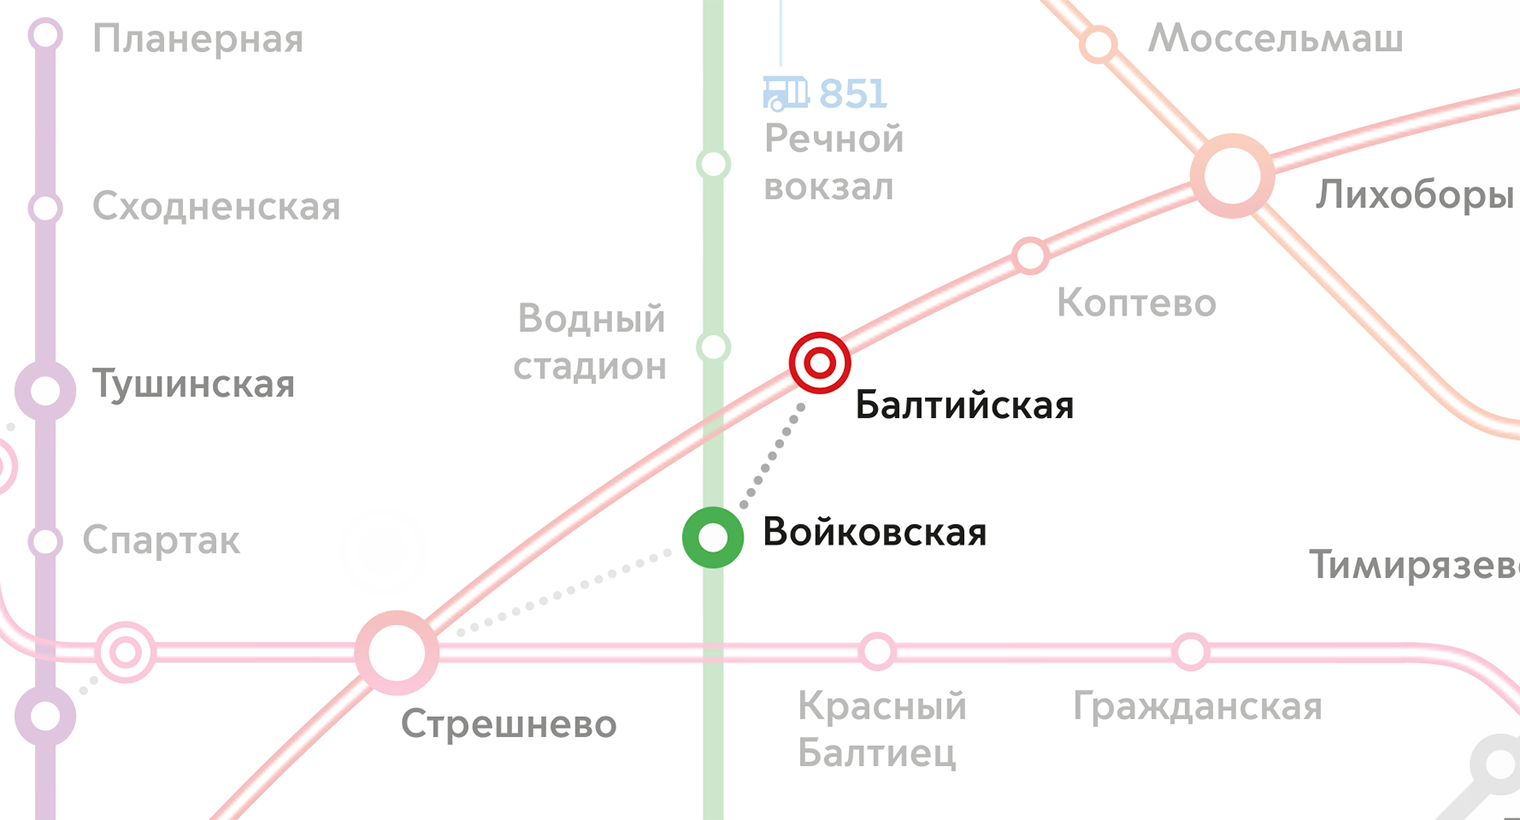 Переходы на МЦК обозначены точечными линиями. Но по схеме непонятно, какой они длины. Источник: «Московский транспорт»